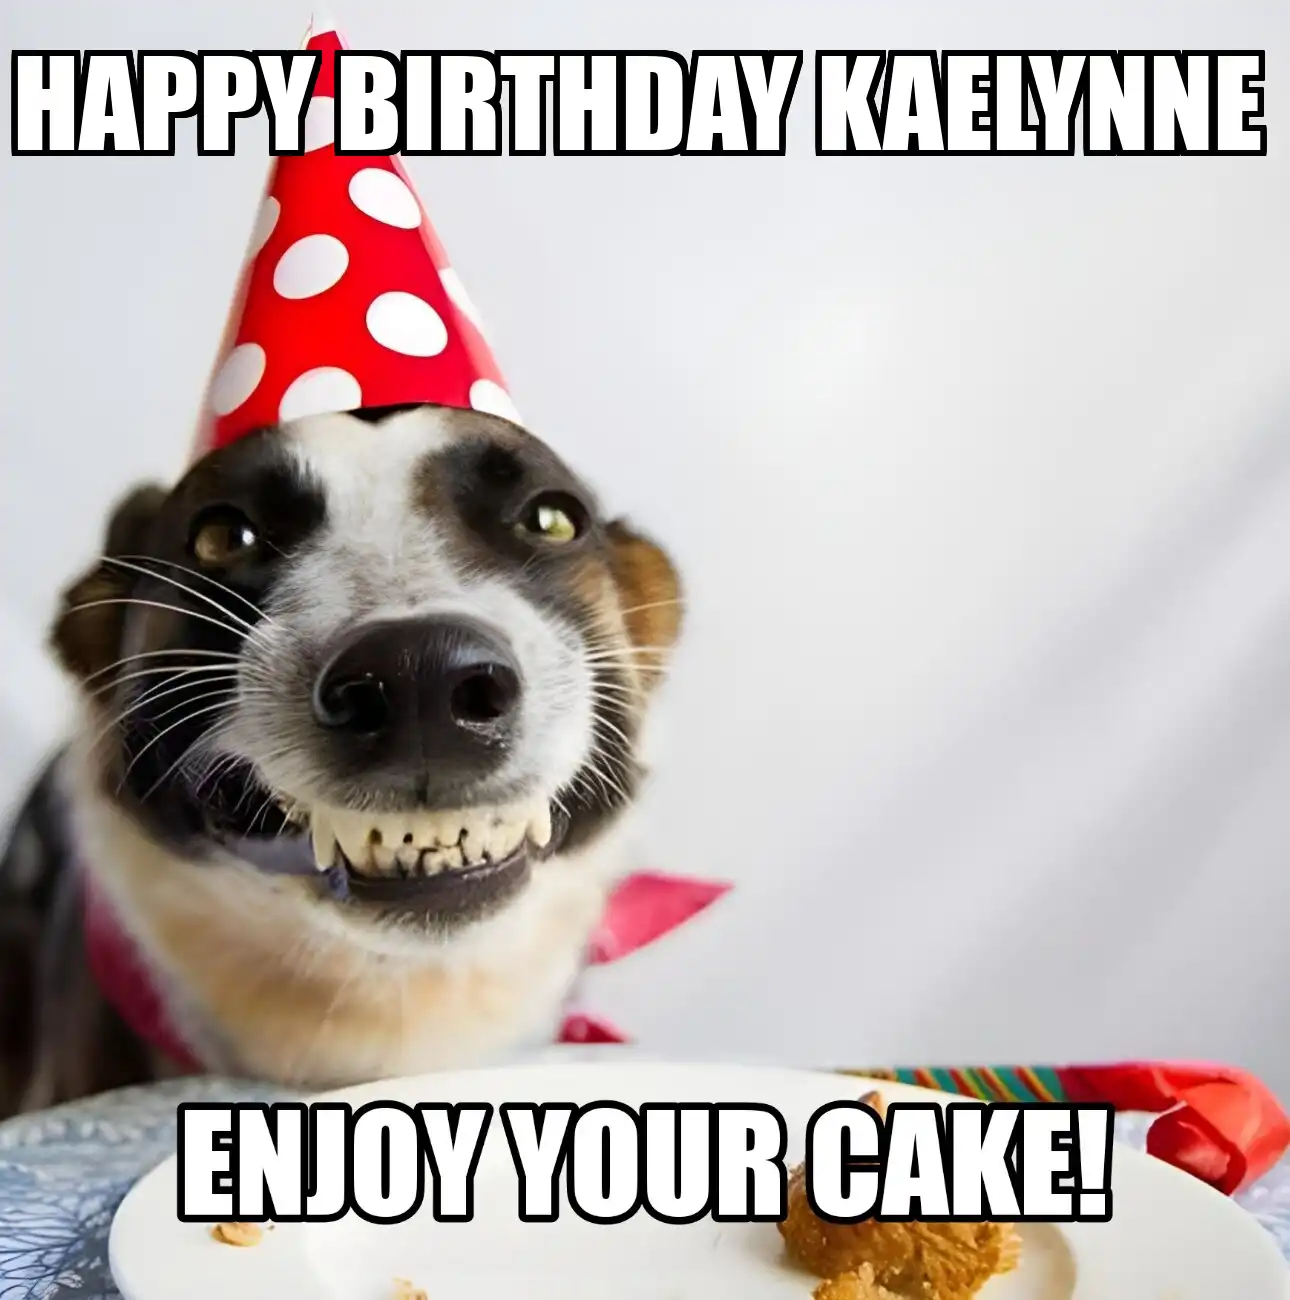 Happy Birthday Kaelynne Enjoy Your Cake Dog Meme